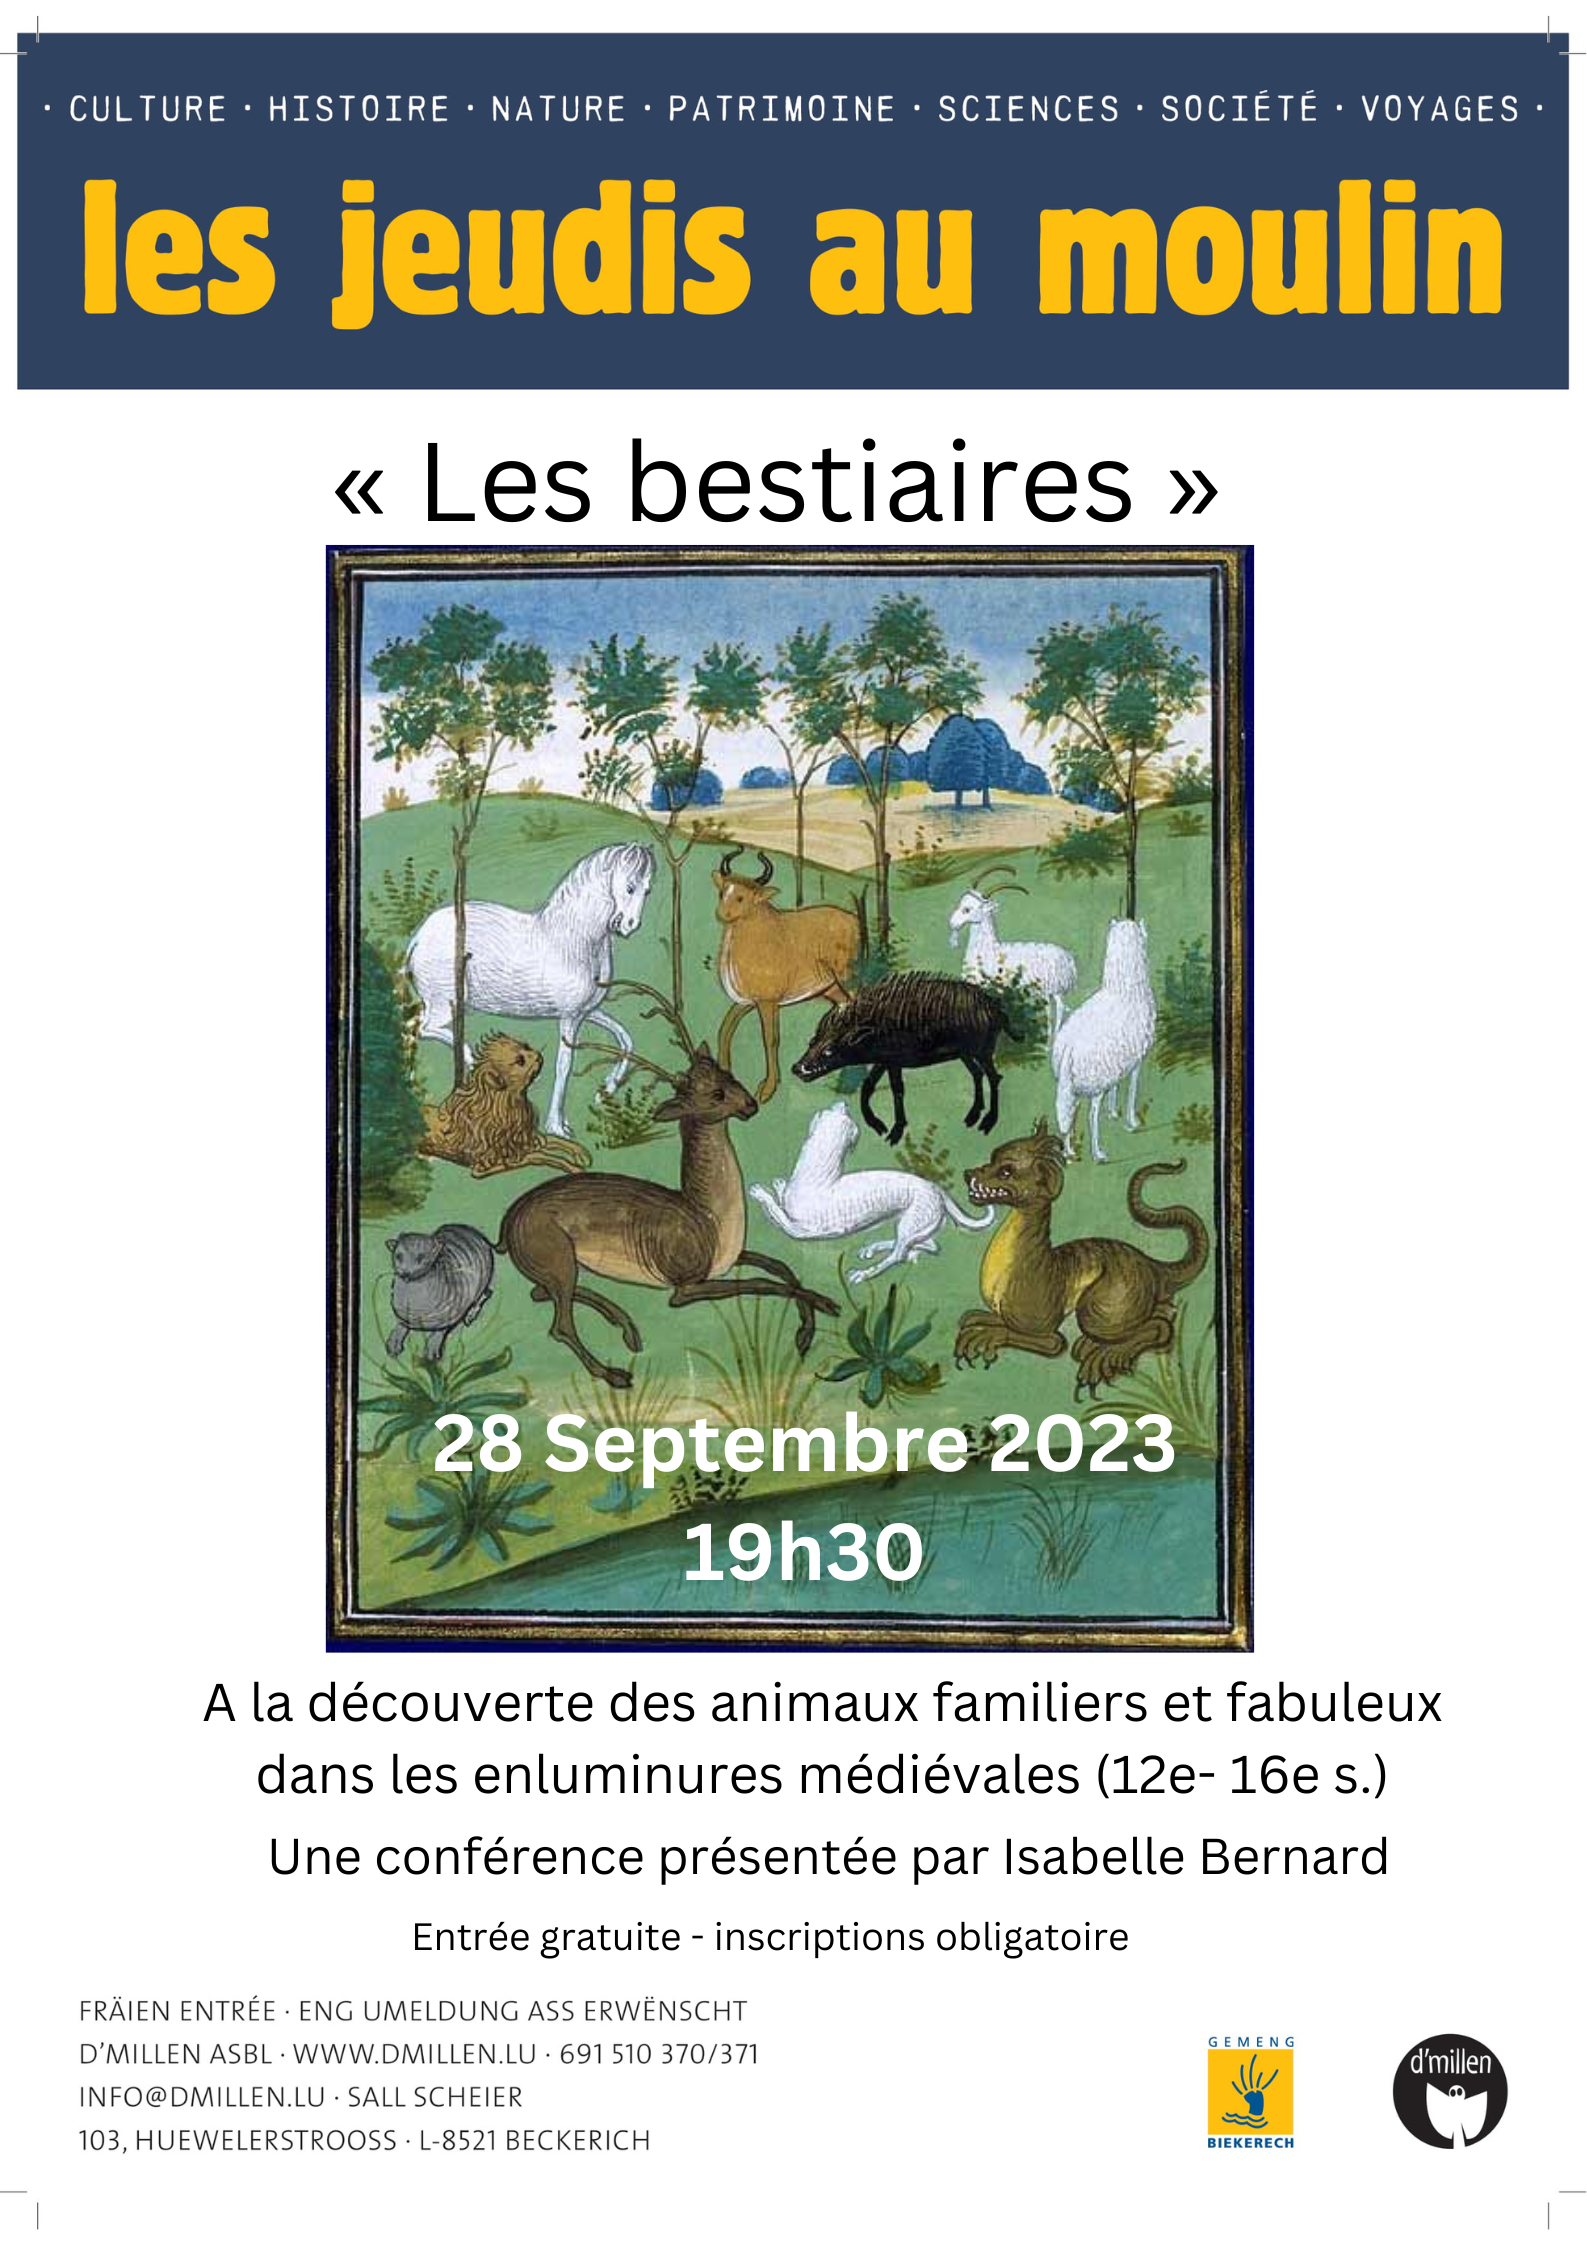 Jam (Jeudis au Moulin) : "Les bestiaires", une conférence d'Isabelle bernard